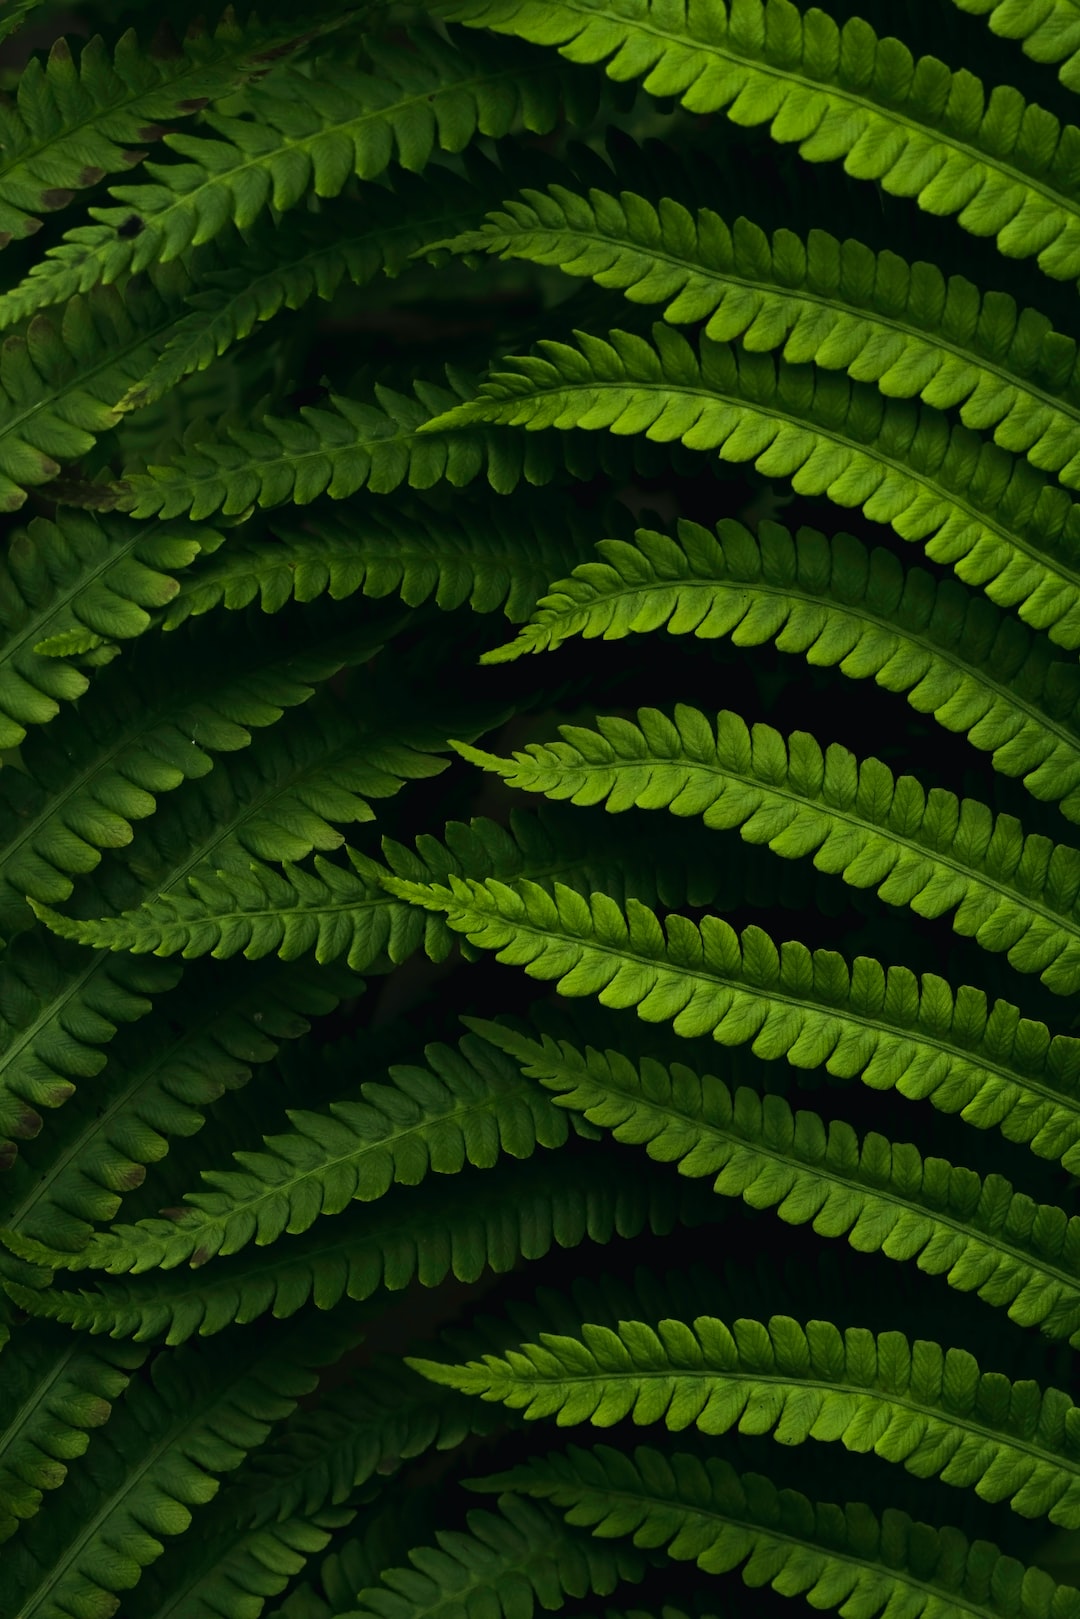 Beautiful fern details in a warm light.